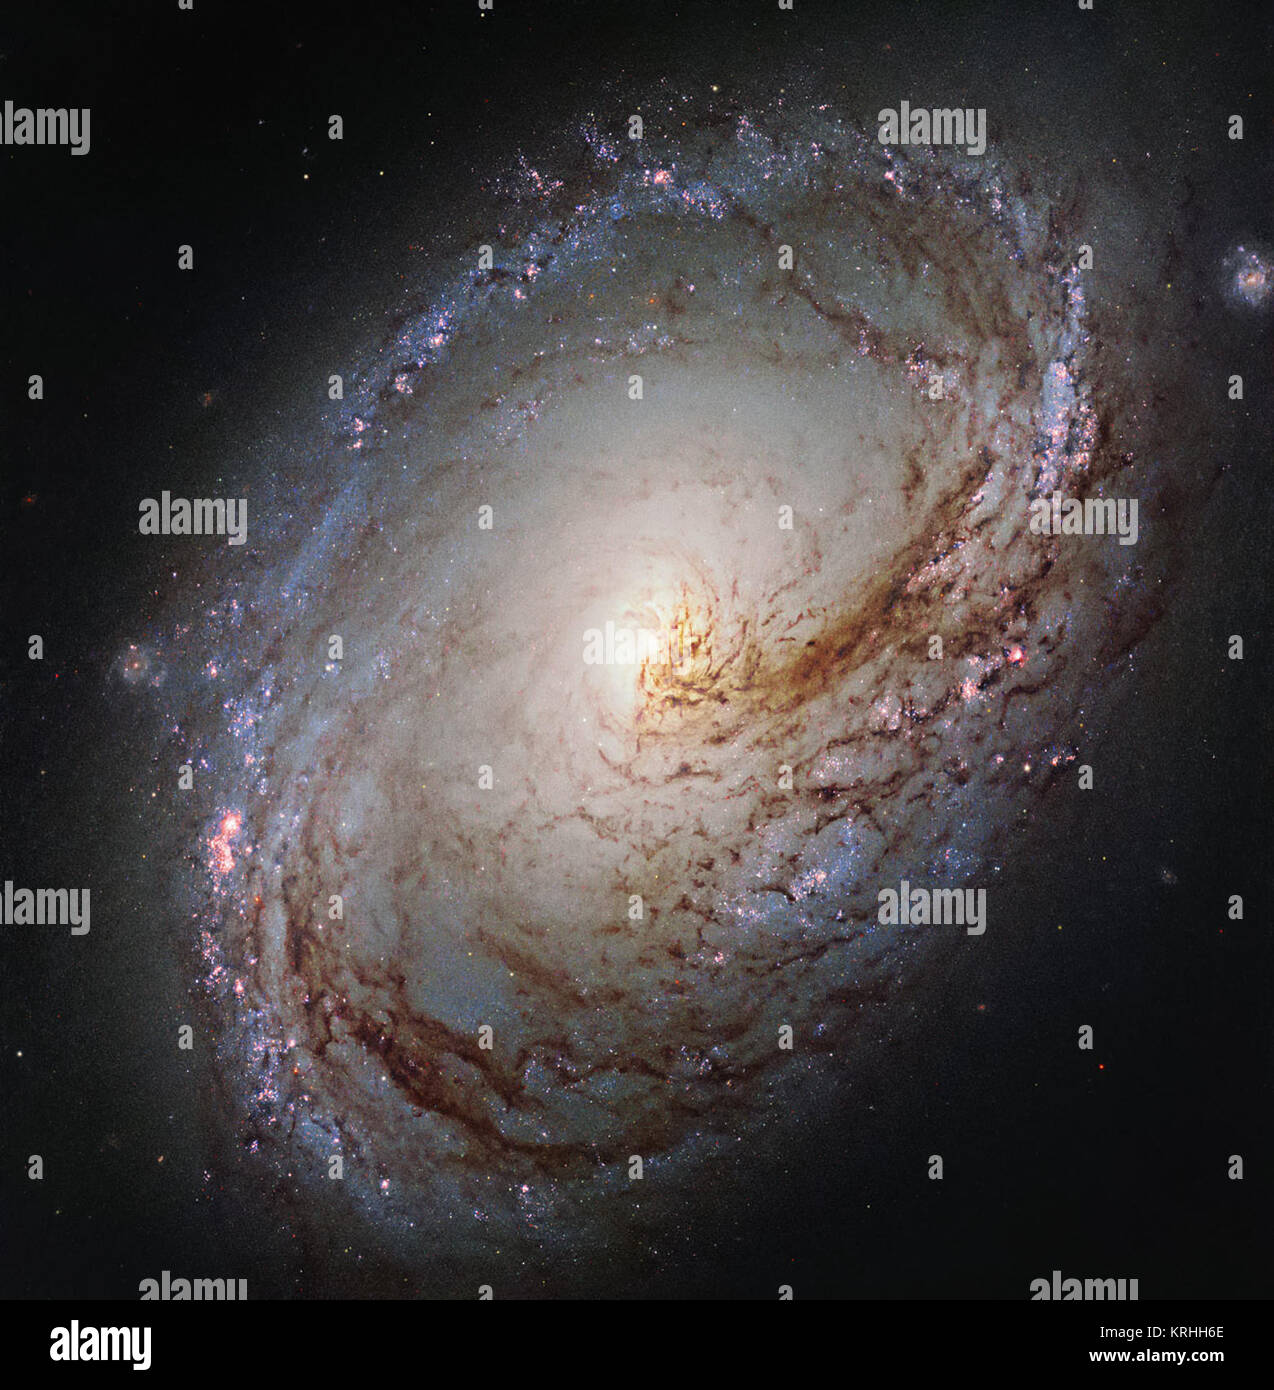 Diese neue NASA/ESA Hubble Space Telescope zeigt Messier 96, eine Spiralgalaxie knapp über 35 Millionen Lichtjahre entfernt im Sternbild Leo (der Löwe). Es ist etwa die gleiche Masse und Größe wie die Milchstraße. Es wurde zuerst von Astronom Pierre Méchain 1781 entdeckt, und fügte hinzu, nur vier Tage später berühmten Charles Messier's Katalog von astronomischen Objekten. Die Galaxie ähnelt einem riesigen Strudel aus glühendem Gas, mit dunklen Staub wirbelt nach innen in Richtung der Nukleus gewellt. Messier 96 ist eine sehr asymmetrische Galaxie; das Staub und Gas ist ungleichmäßig verteilt in einer schwachen Spiralarme und seine Stockfoto